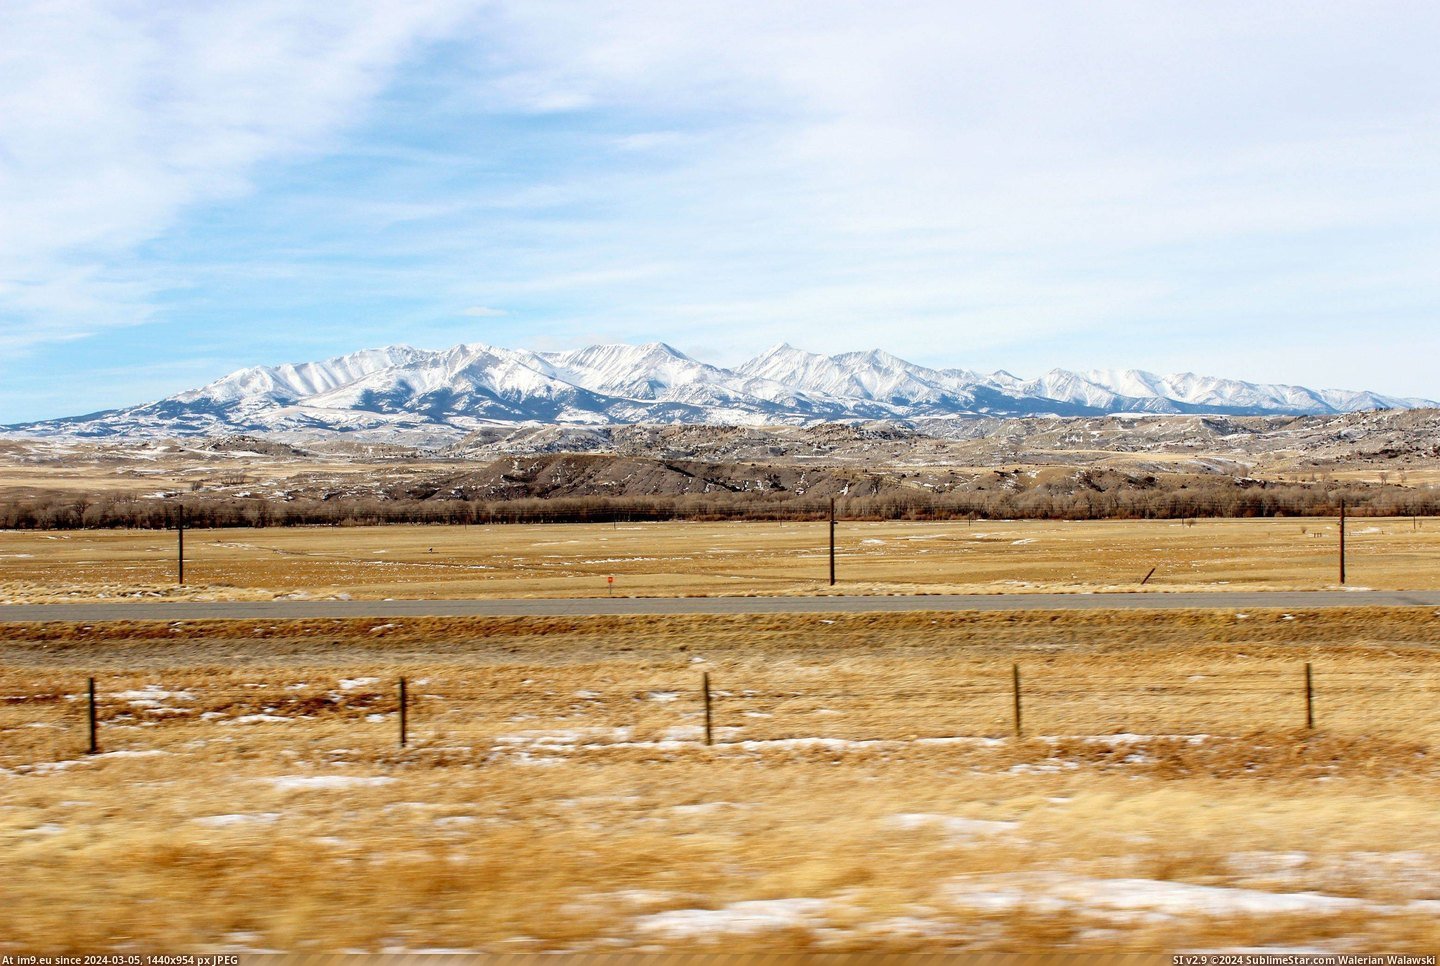 #Crazy #Montana #Mountains [Earthporn] Crazy Mountains - Montana [5184 × 3456] Pic. (Obraz z album My r/EARTHPORN favs))